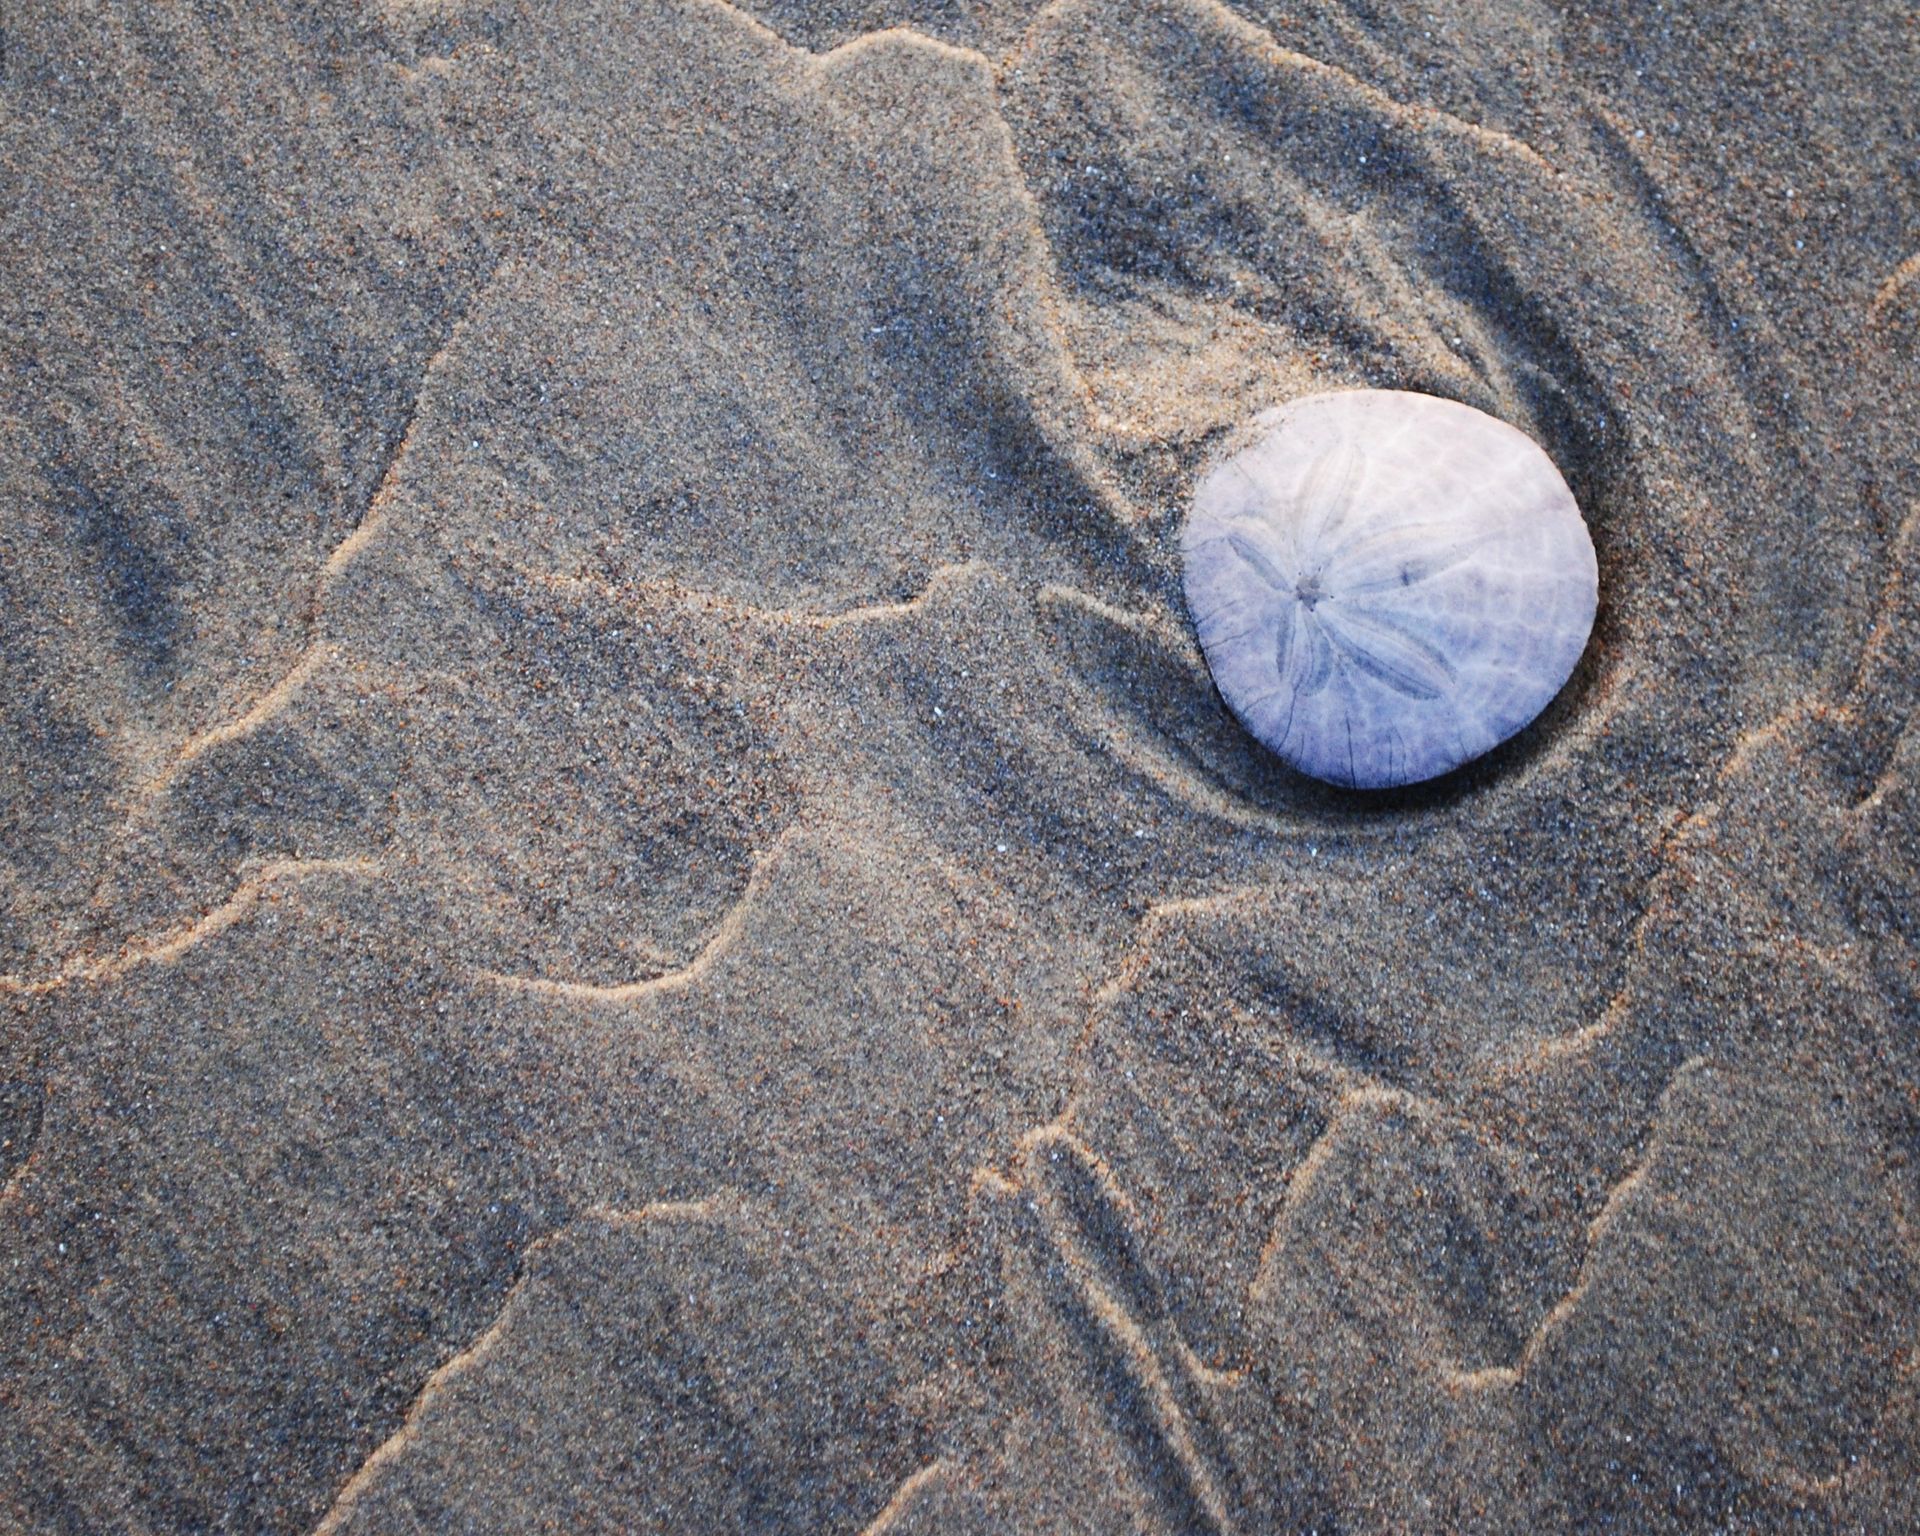 A sand dollar lying on wet sand near the sea.